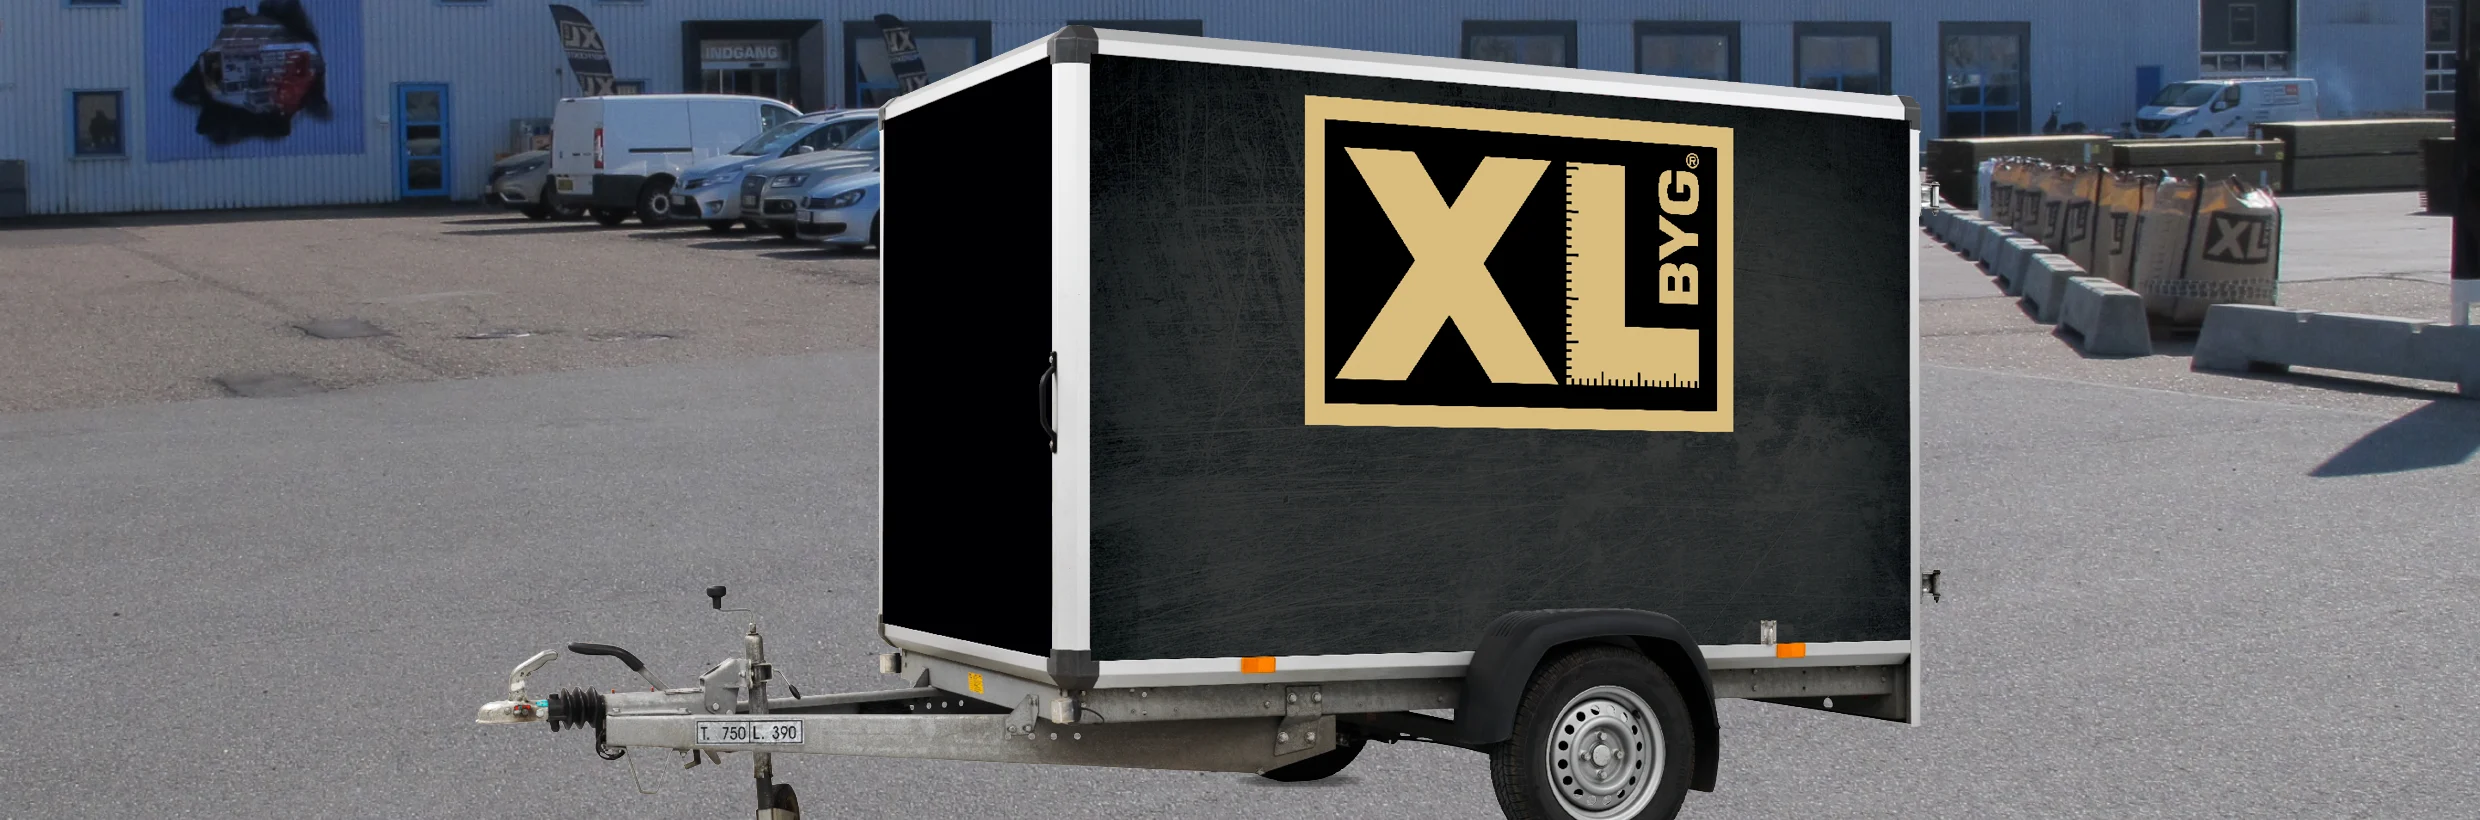 Lej en trailer gratis hos XL-BYG ⇒ Se og find booking her